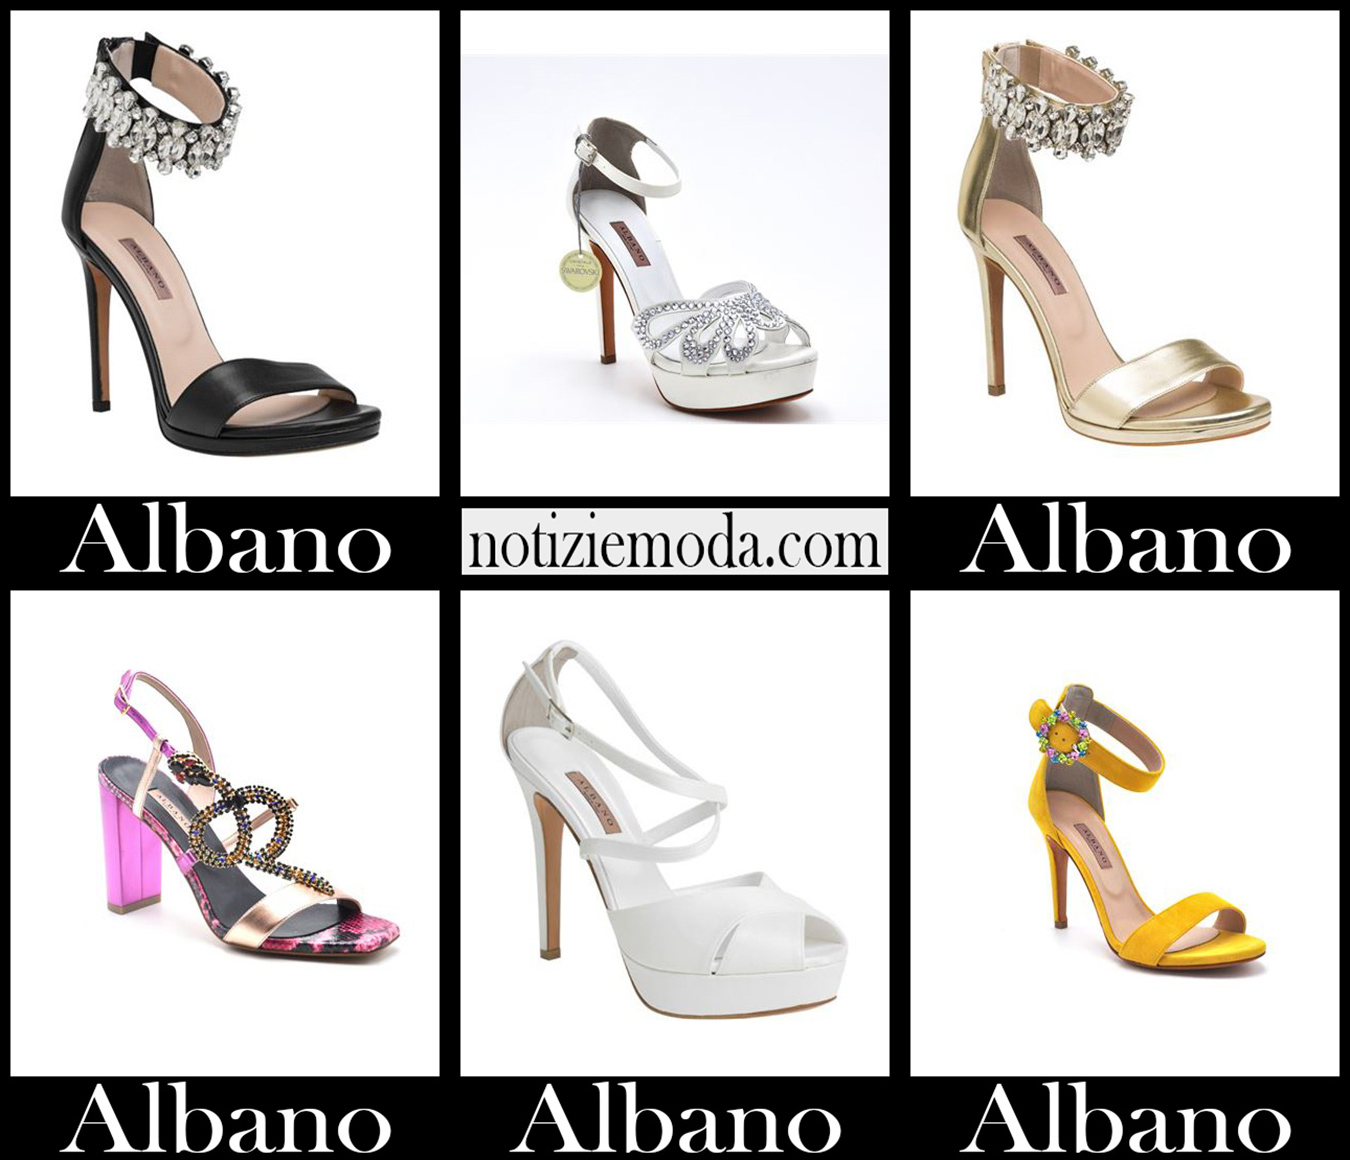 Nuovi arrivi scarpe Albano 2021 calzature moda donna